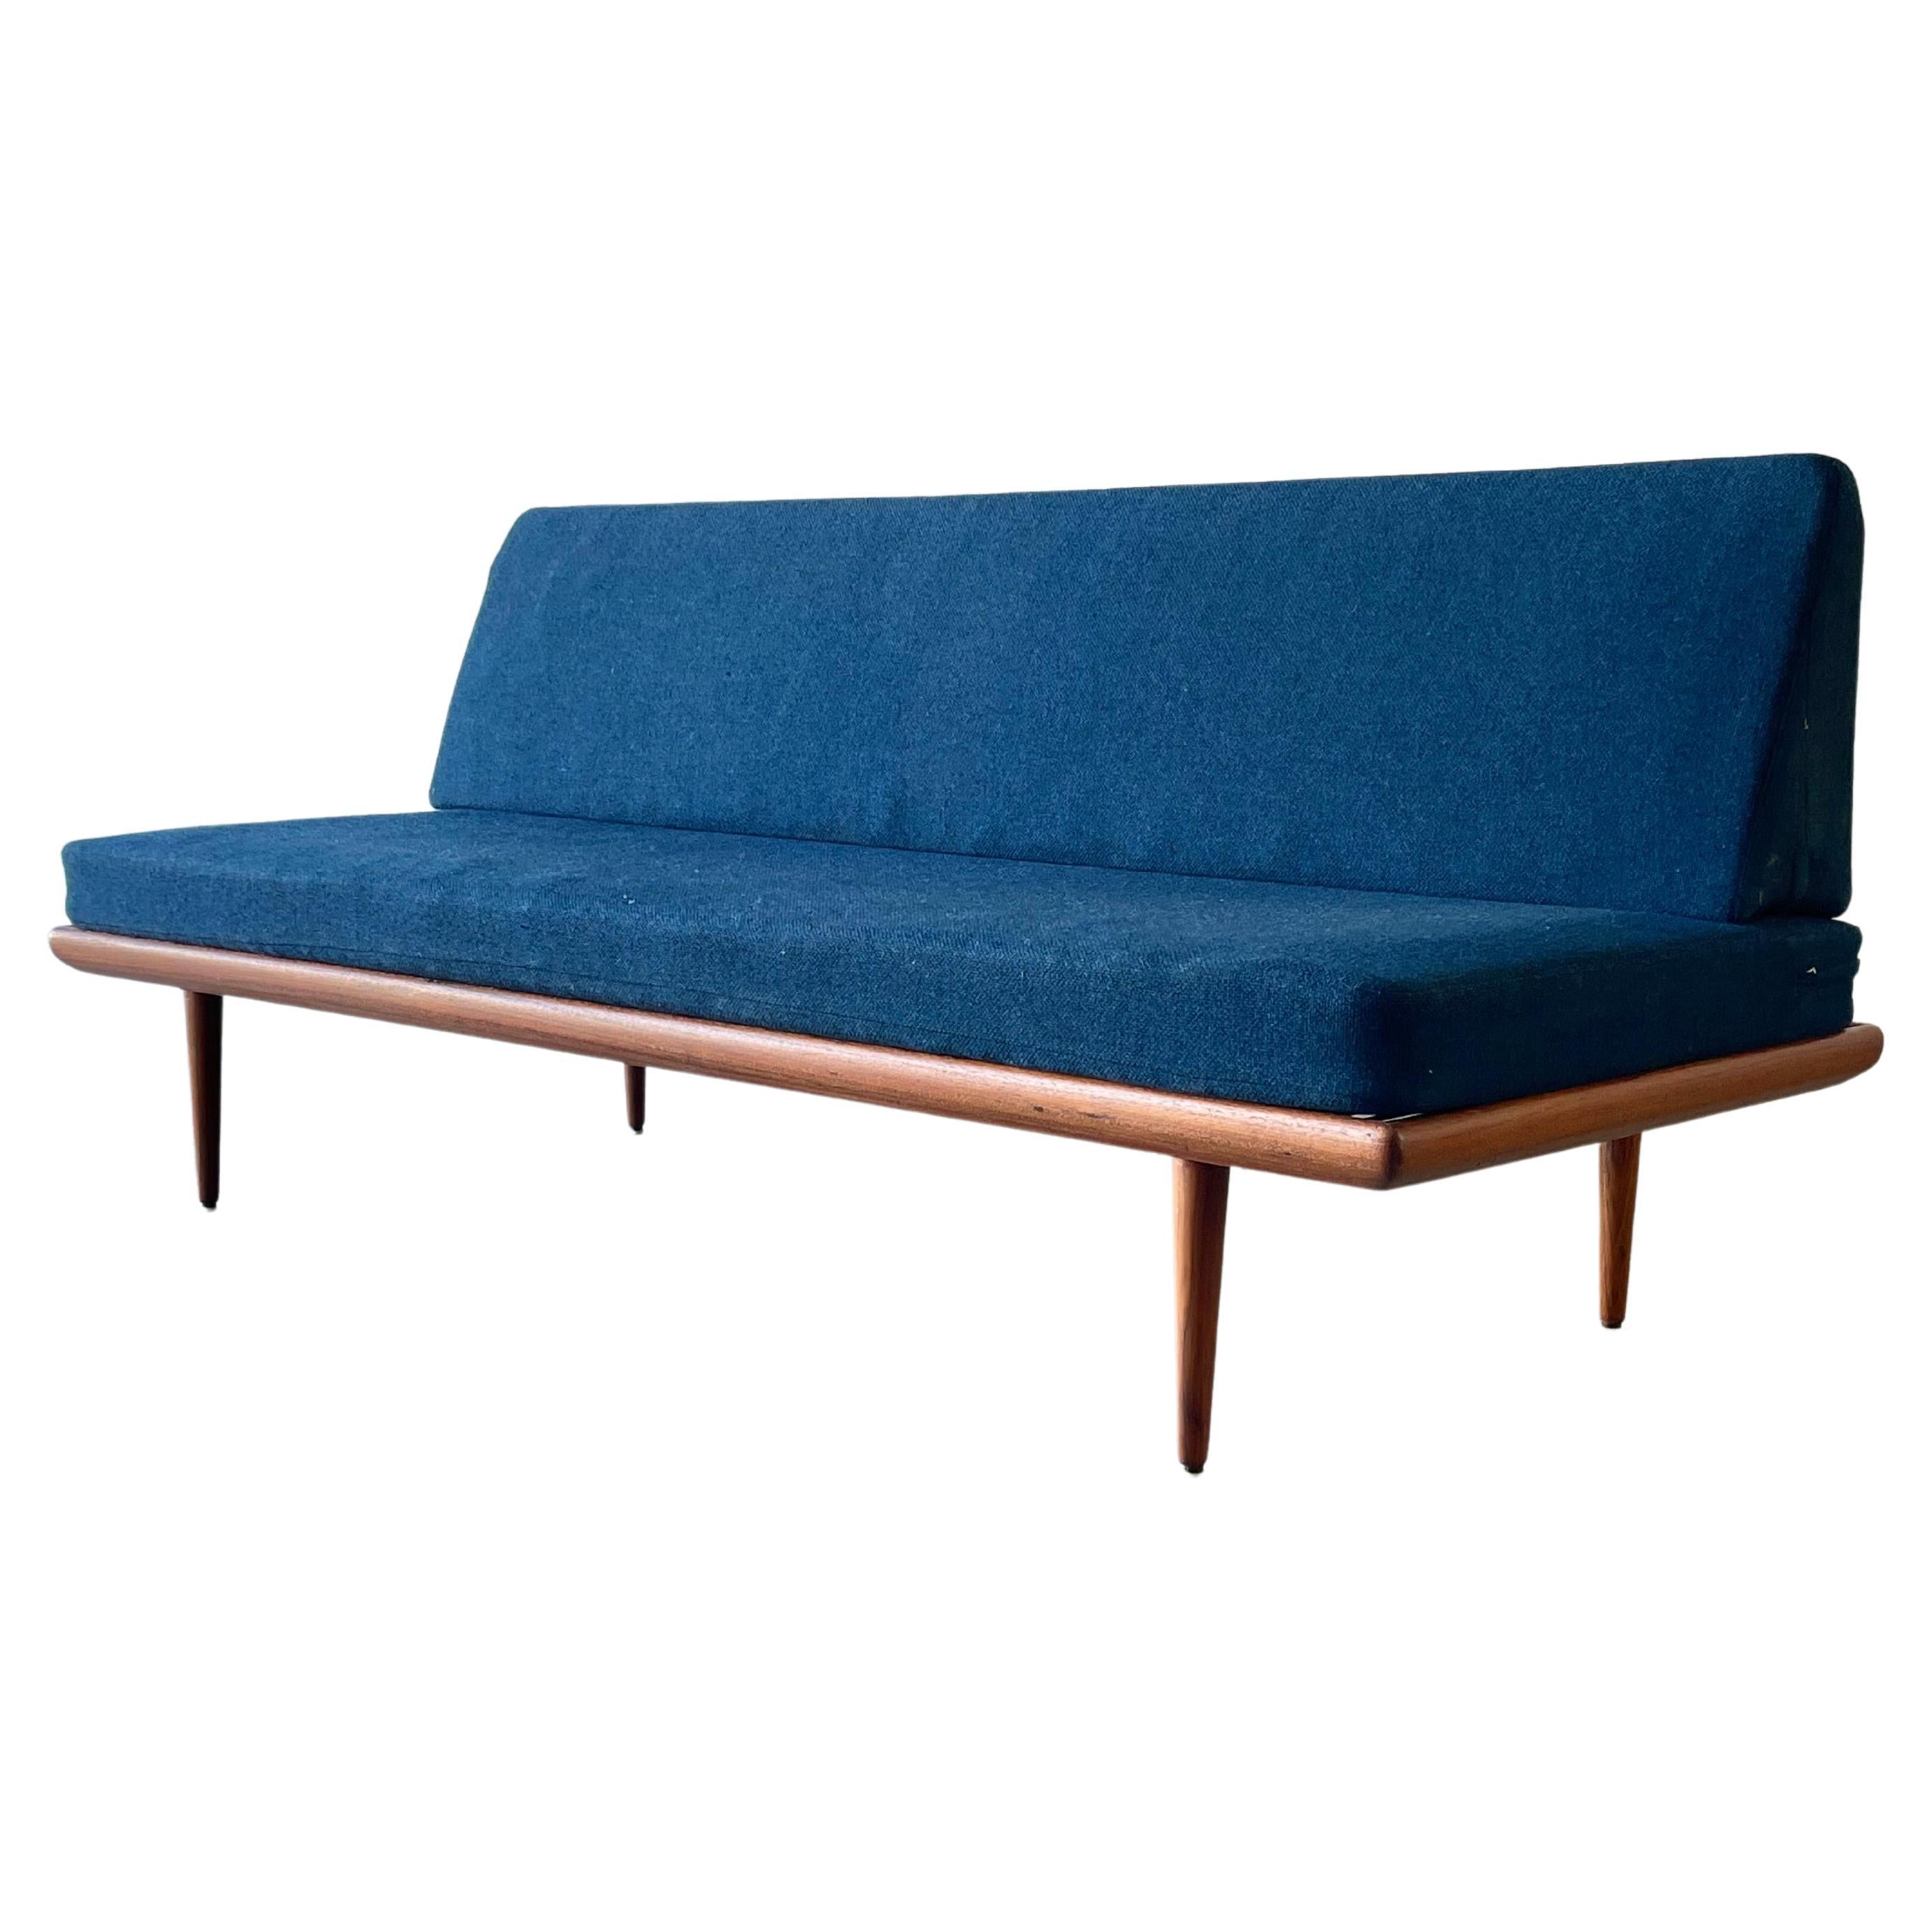 Peter Hvidt France & Son / John Stuart Mid-Century Danish Modern Daybed Sofa